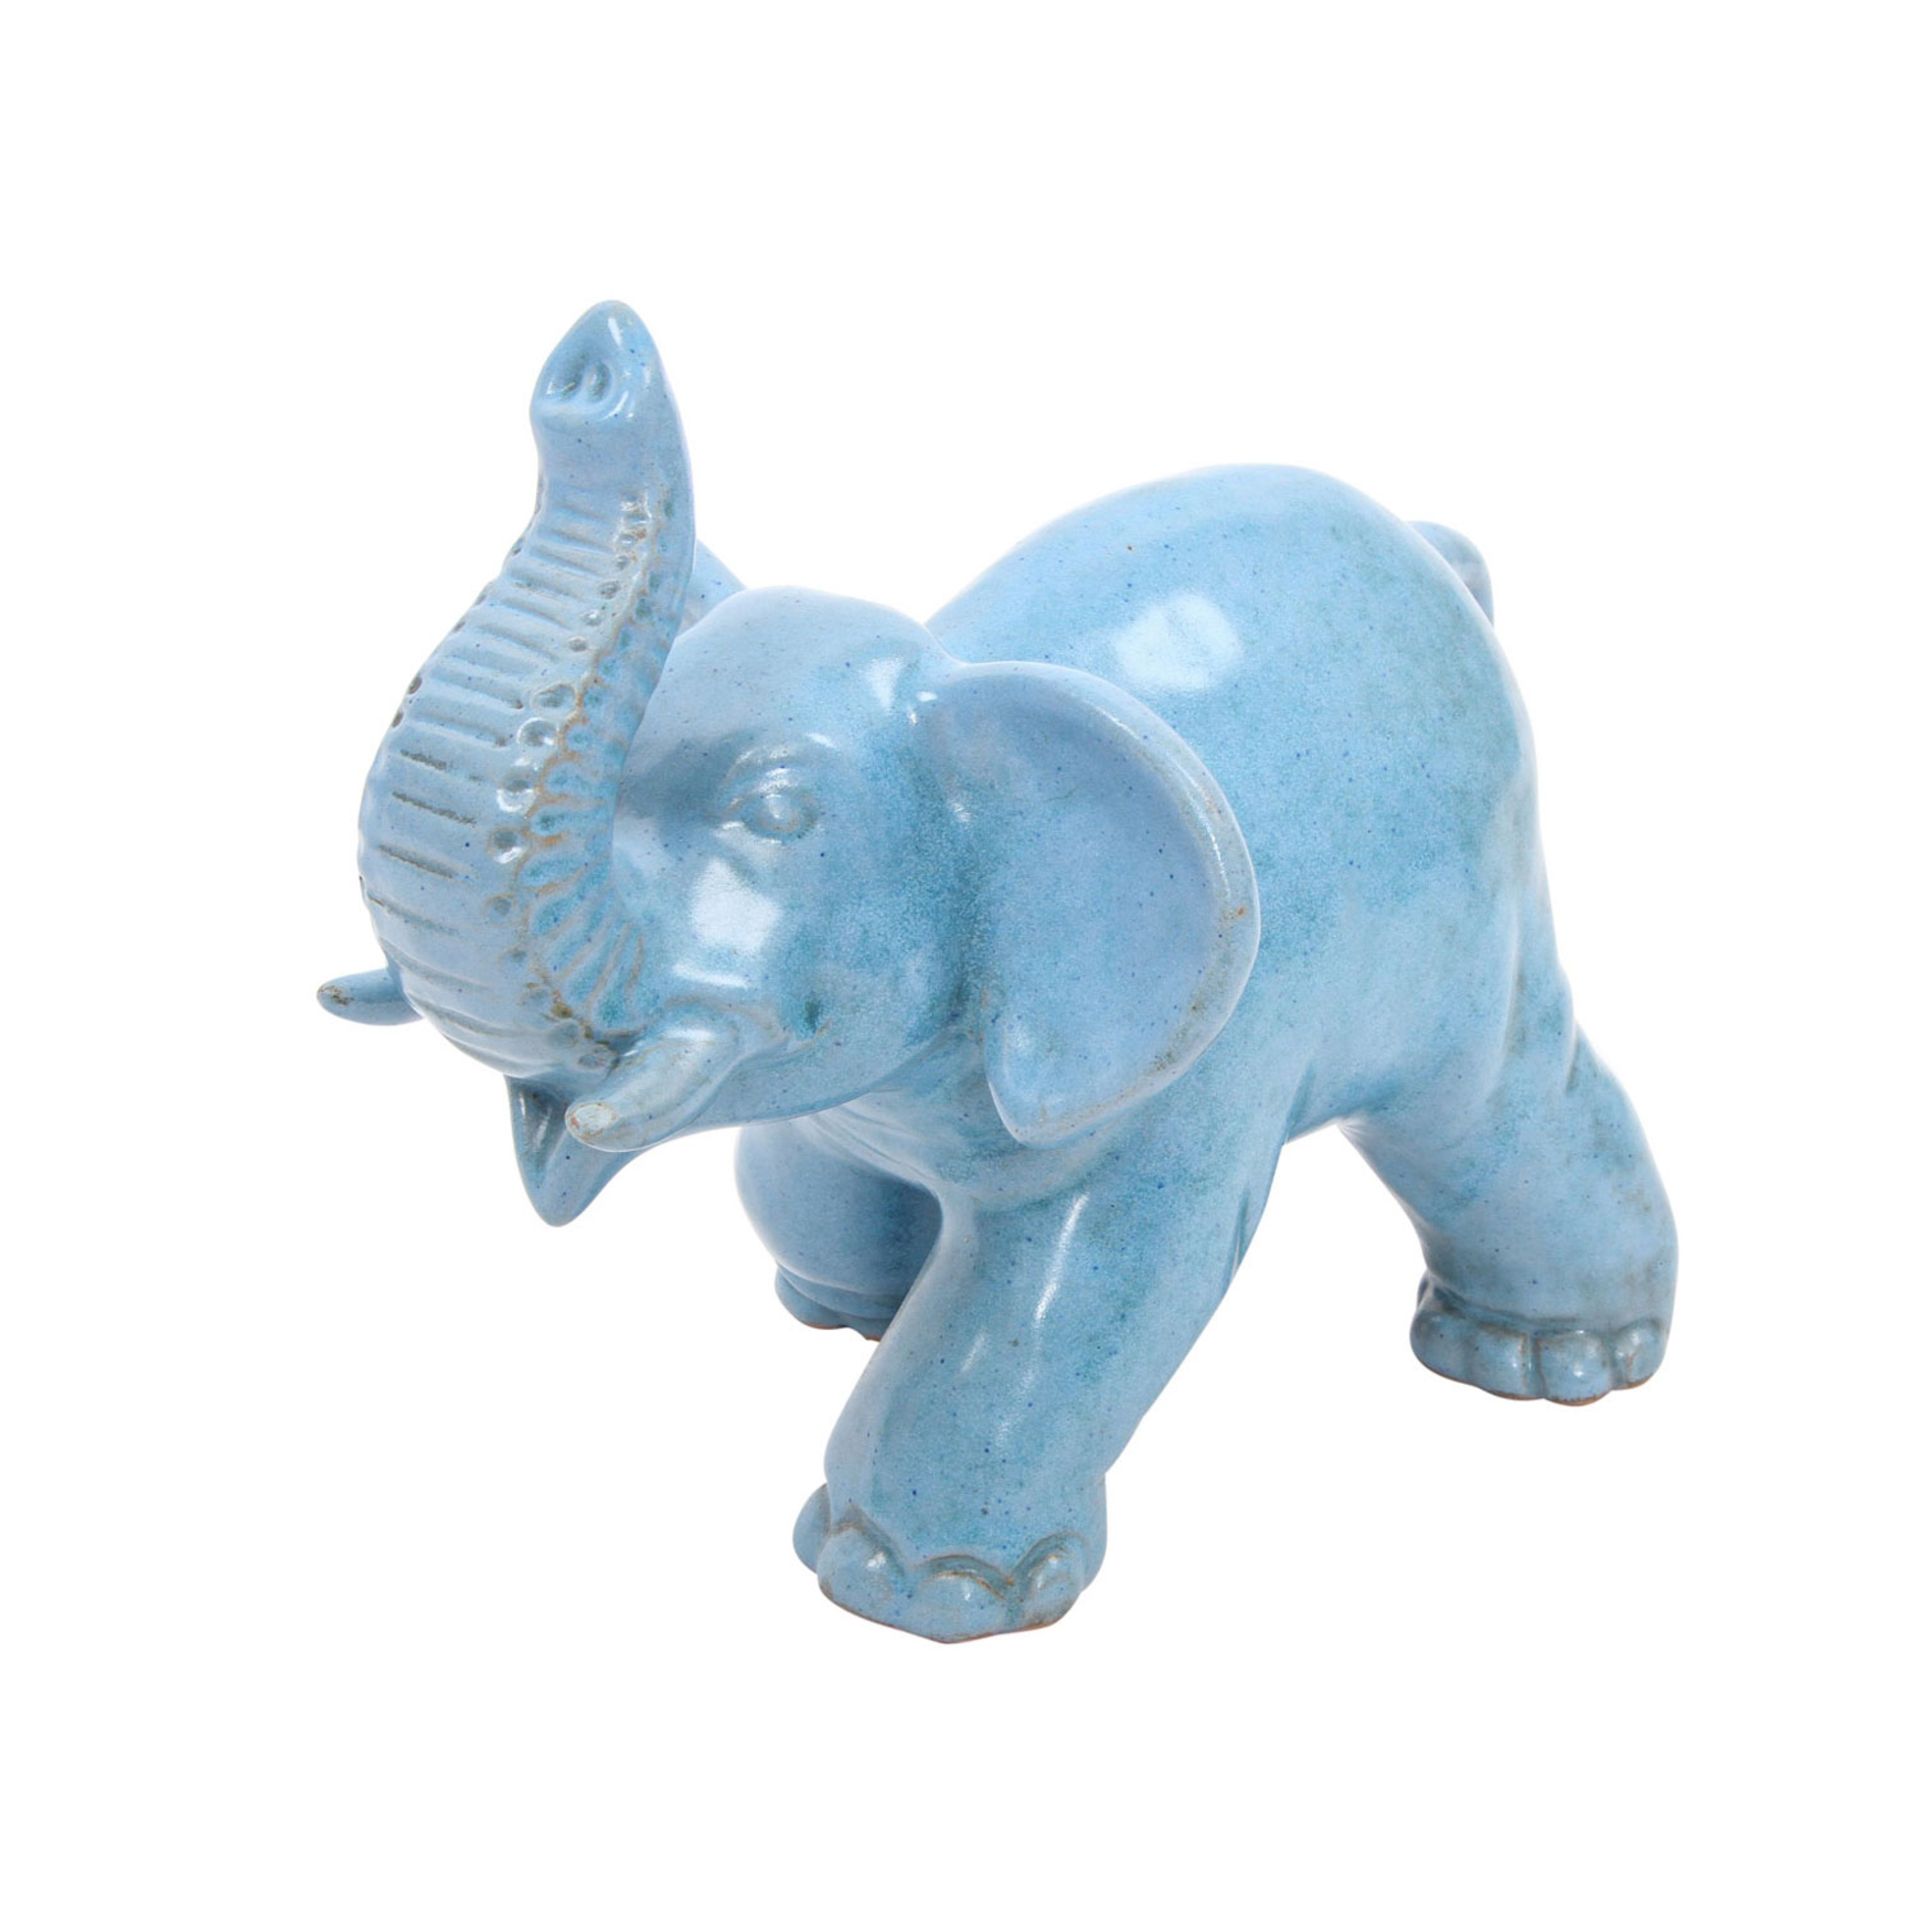 GMUNDENER Keramik Tierfigur "Elefant", 20. Jh. Rötlicher Scherben, blaue Glasur, schreitender